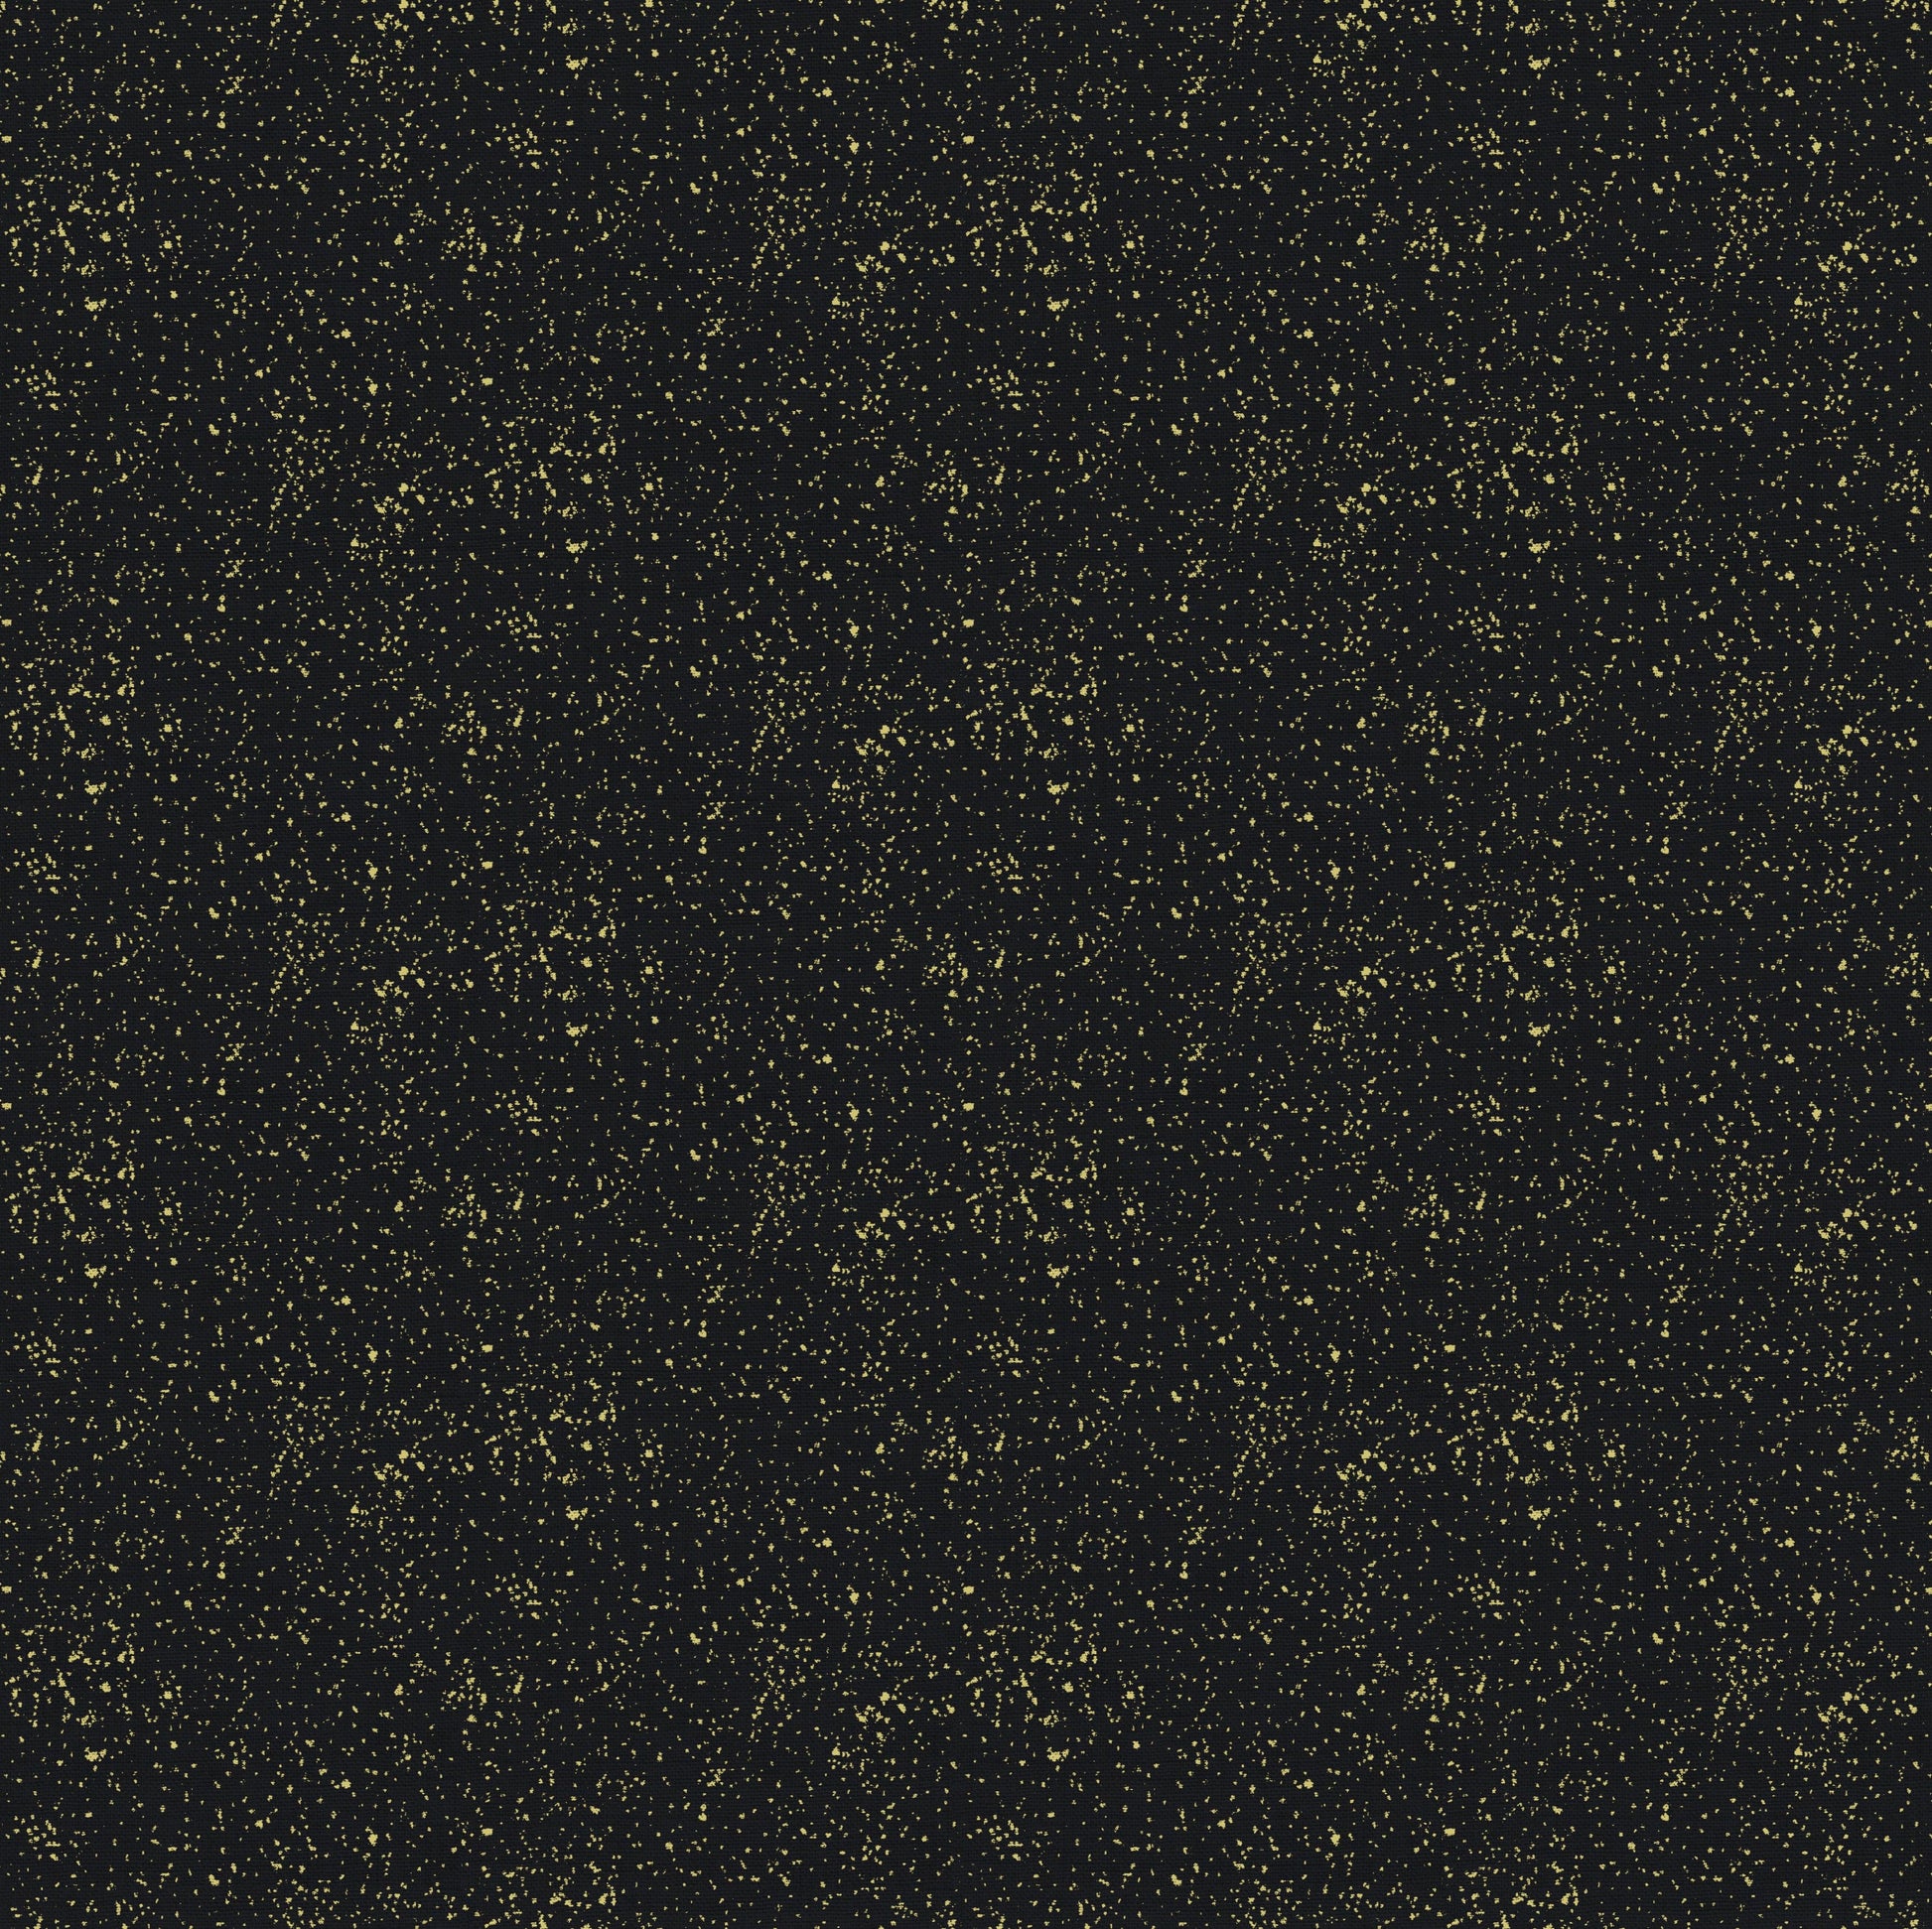 Makower Fabric Metallic Linen Texture Black 2566 X